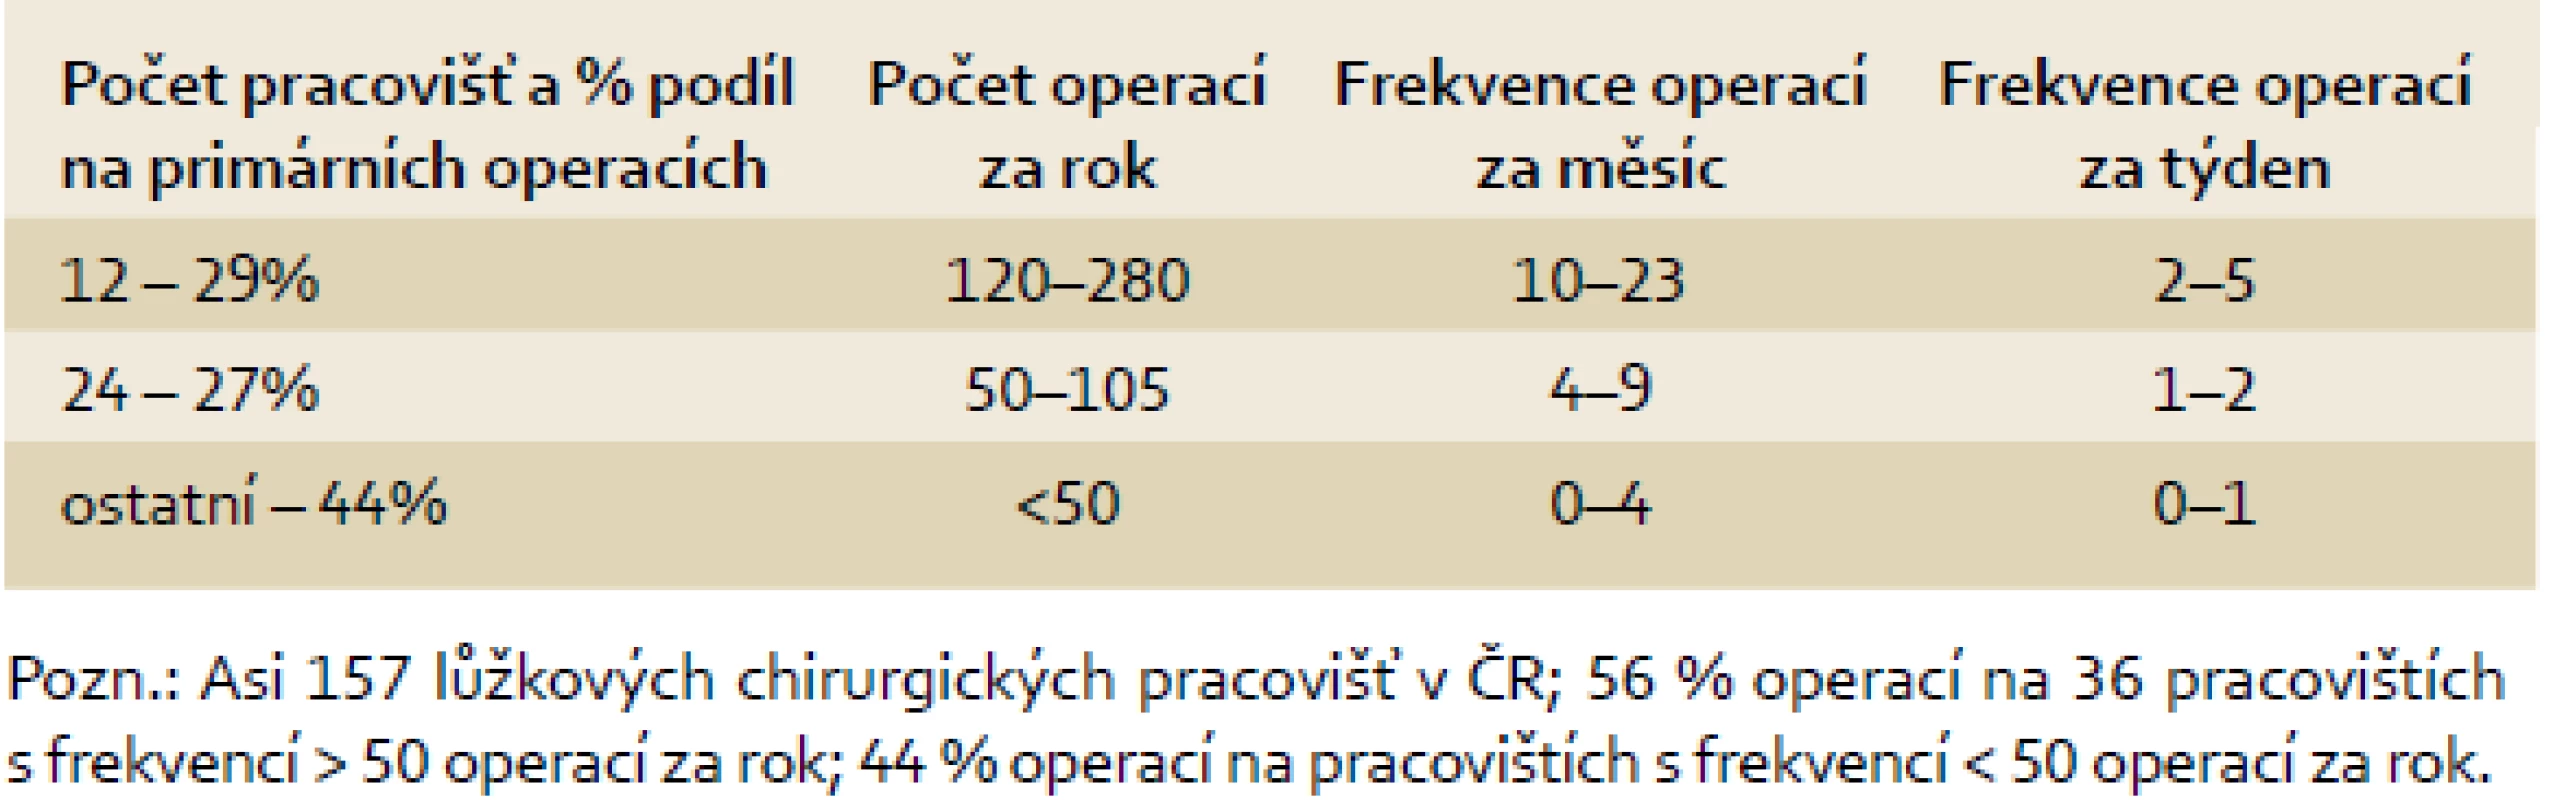 Frekvence primárních operací kolorektálního karcinomu v období 2006-2010.
Tab. 5 Frequency of primary operations of colorectal cancer between the years 2006 and 2010.